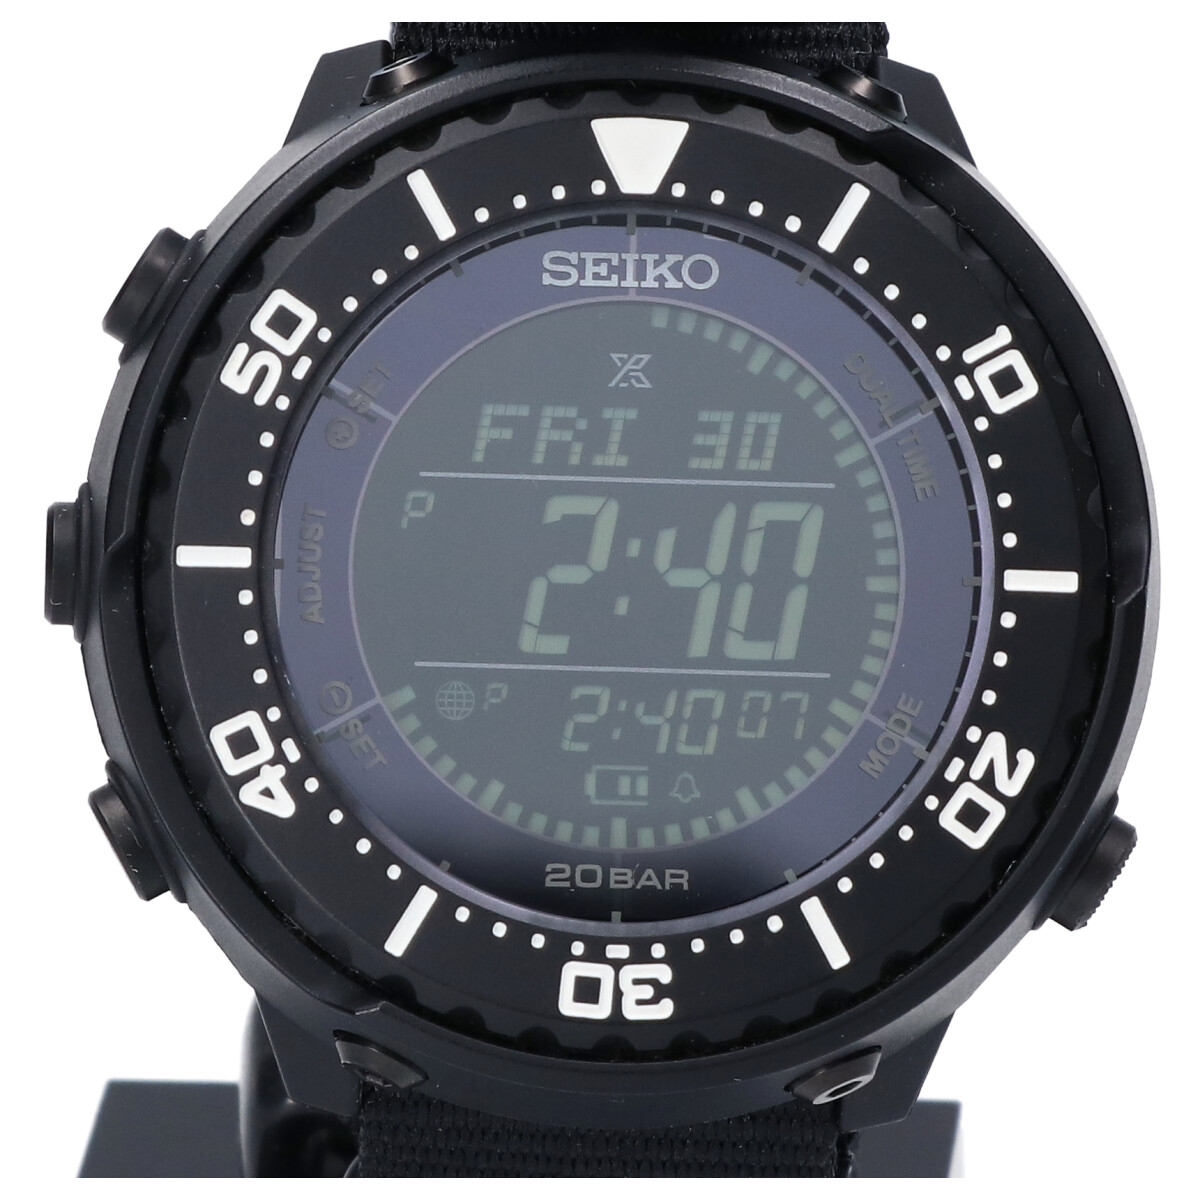 セイコーのビューティアンドユース別注 14435991342 プロスペックス フィールドマスター デジタル タフソーラー電波 腕時計の買取実績です。